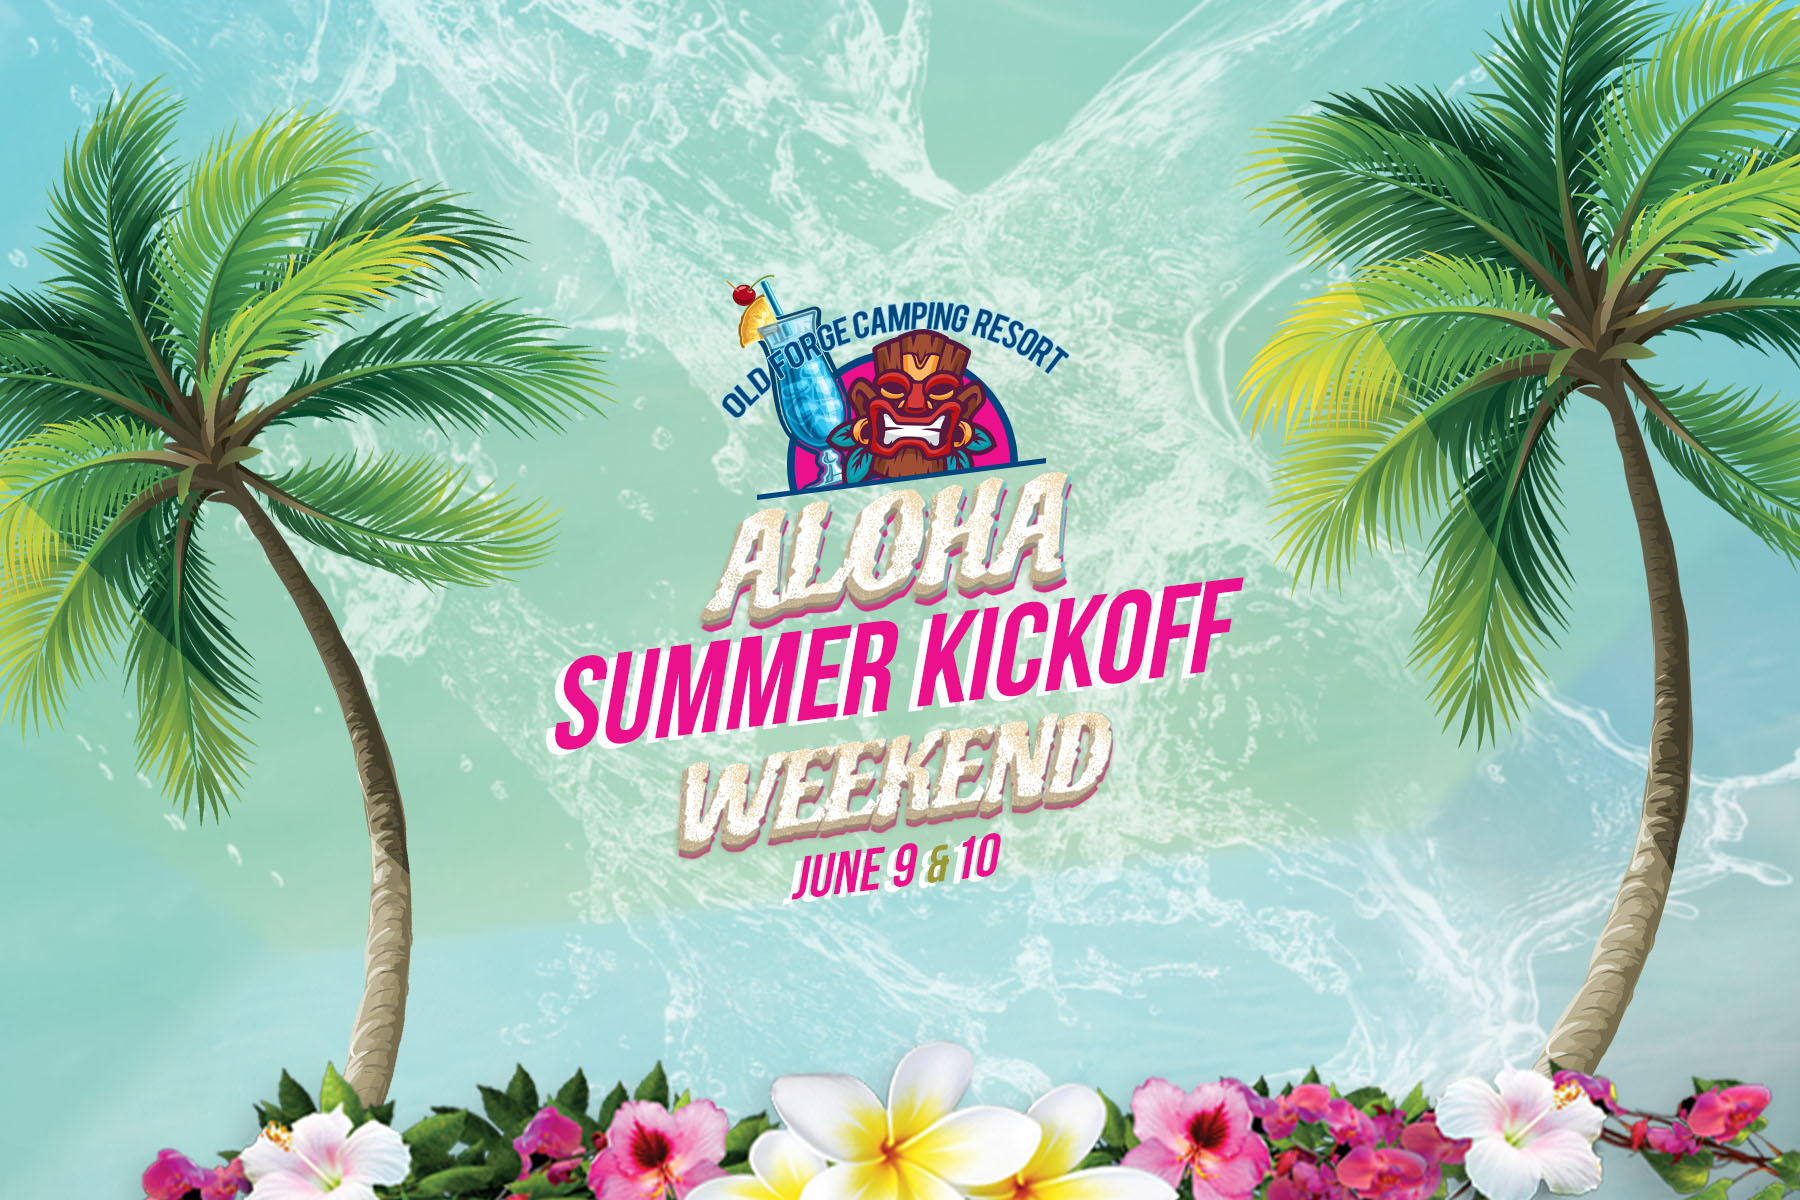 Aloha Summer Kickoff Weekend!